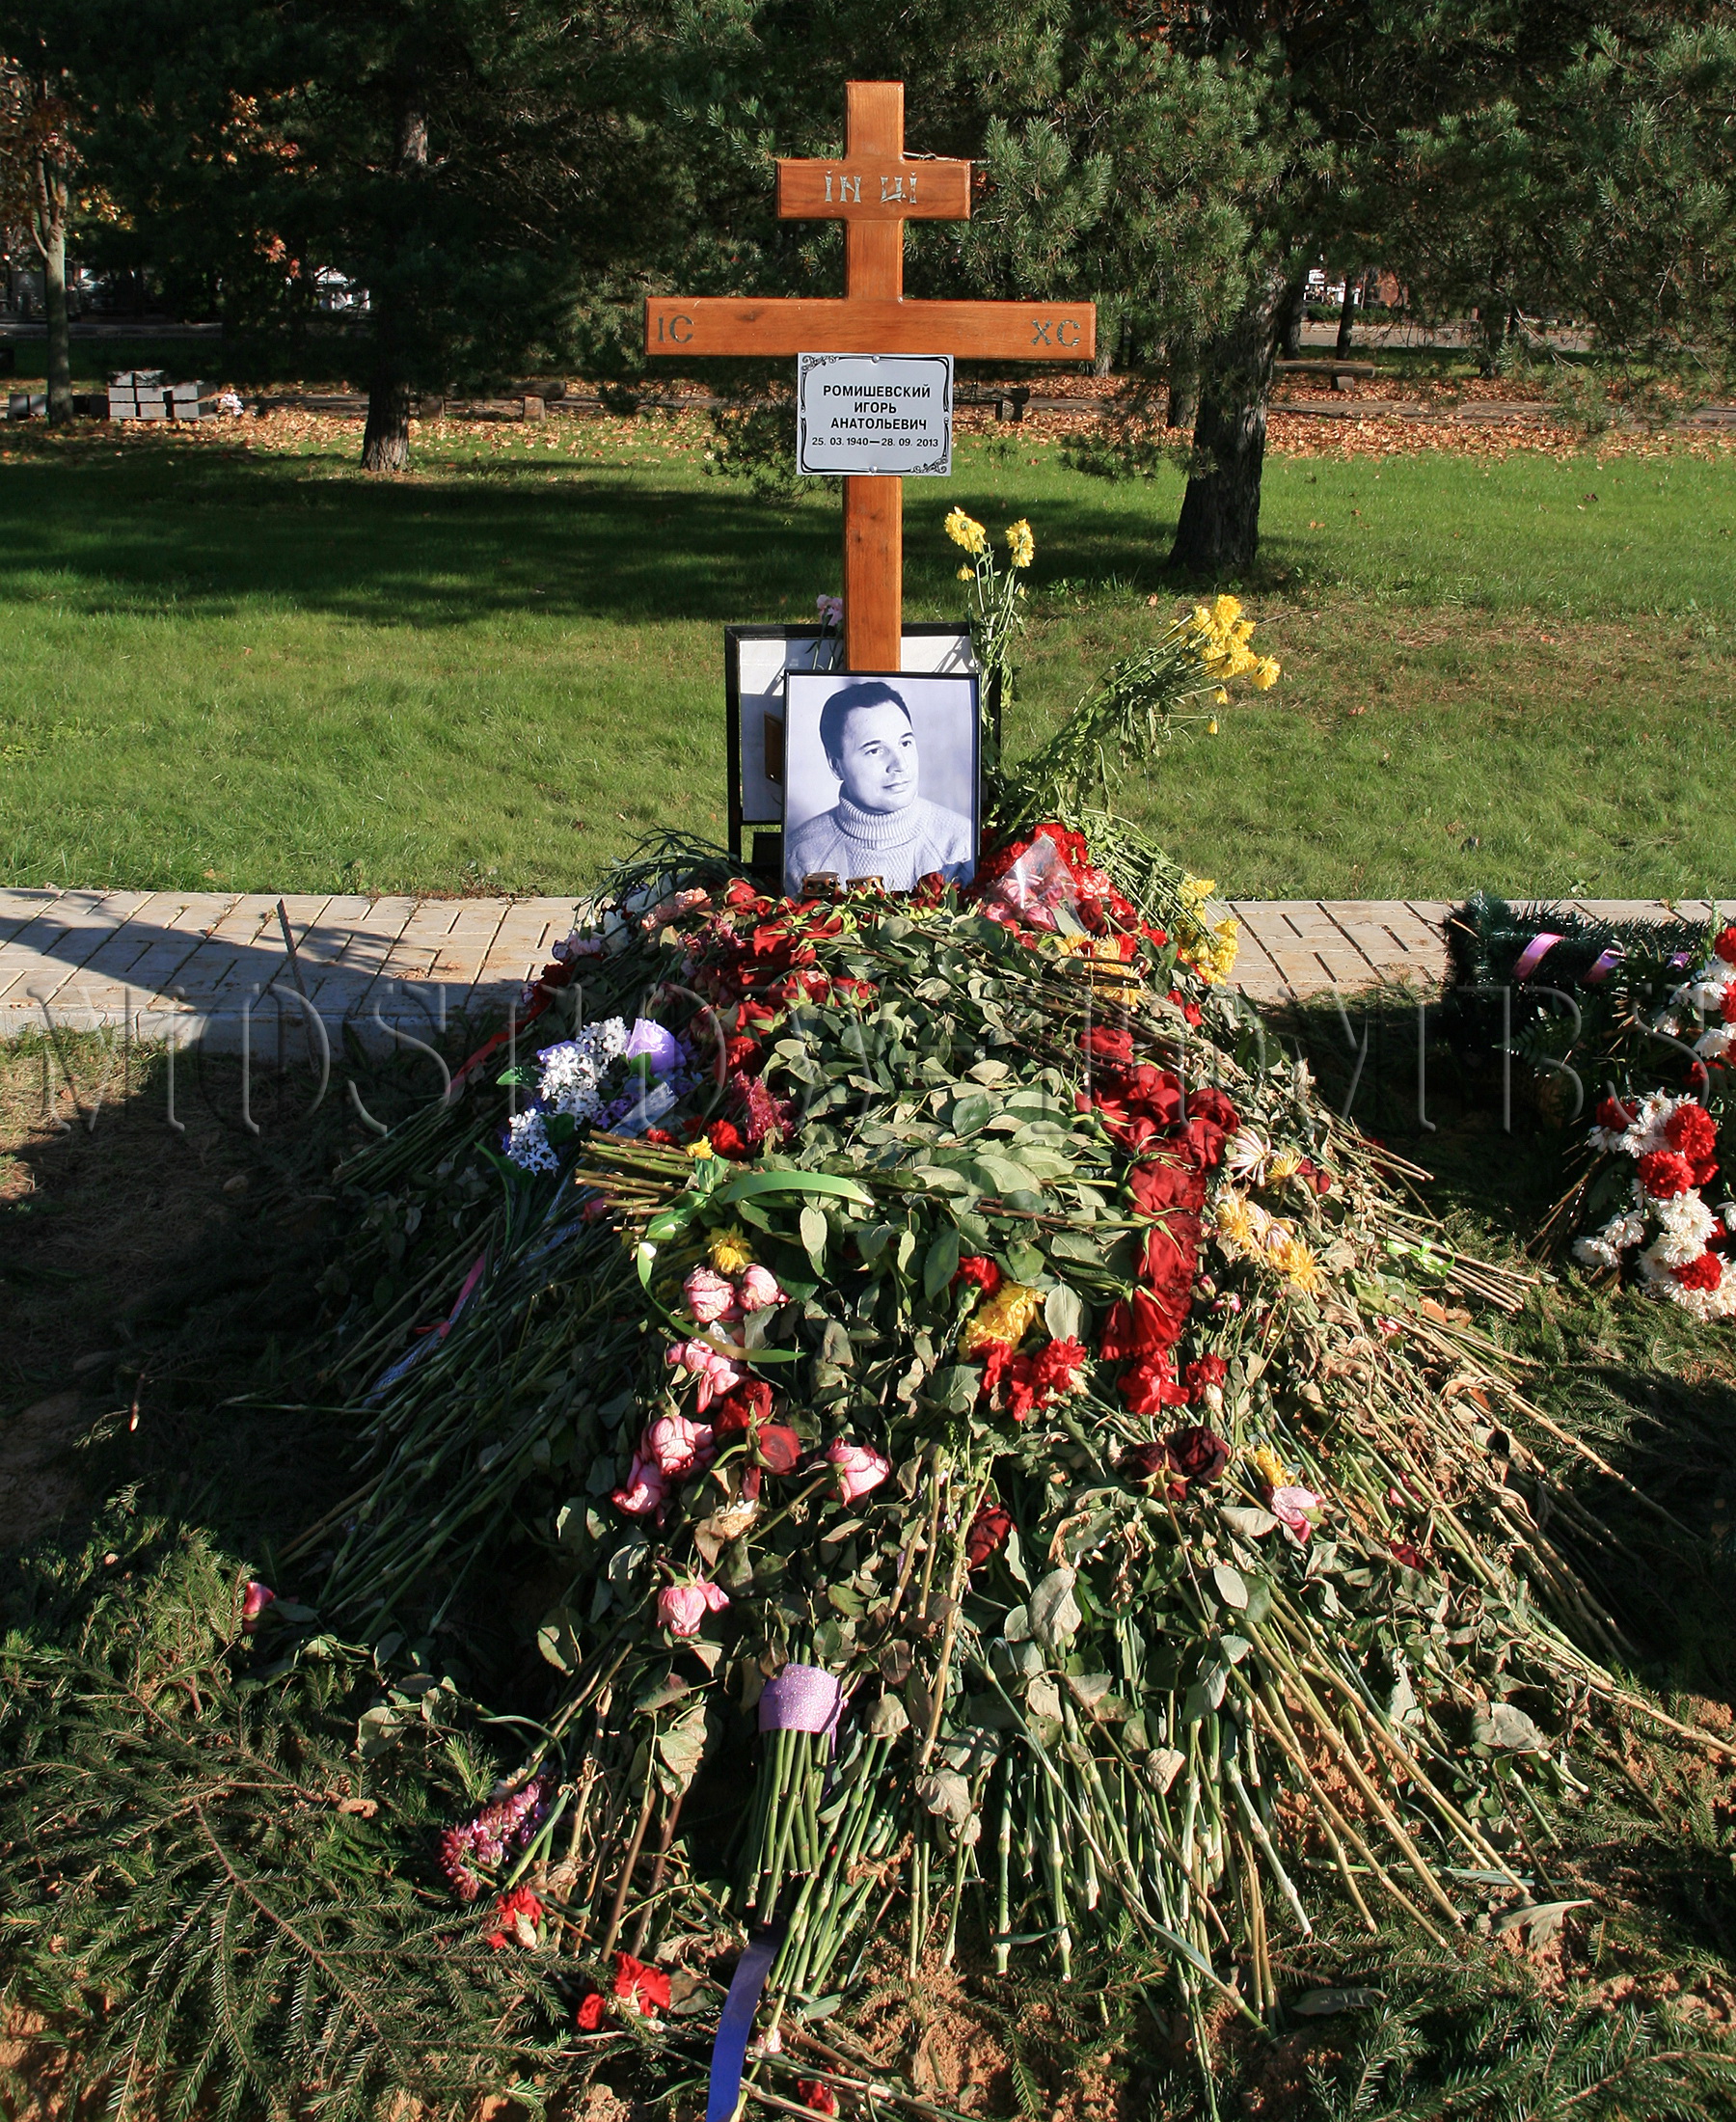 Николая рыжкова похоронили